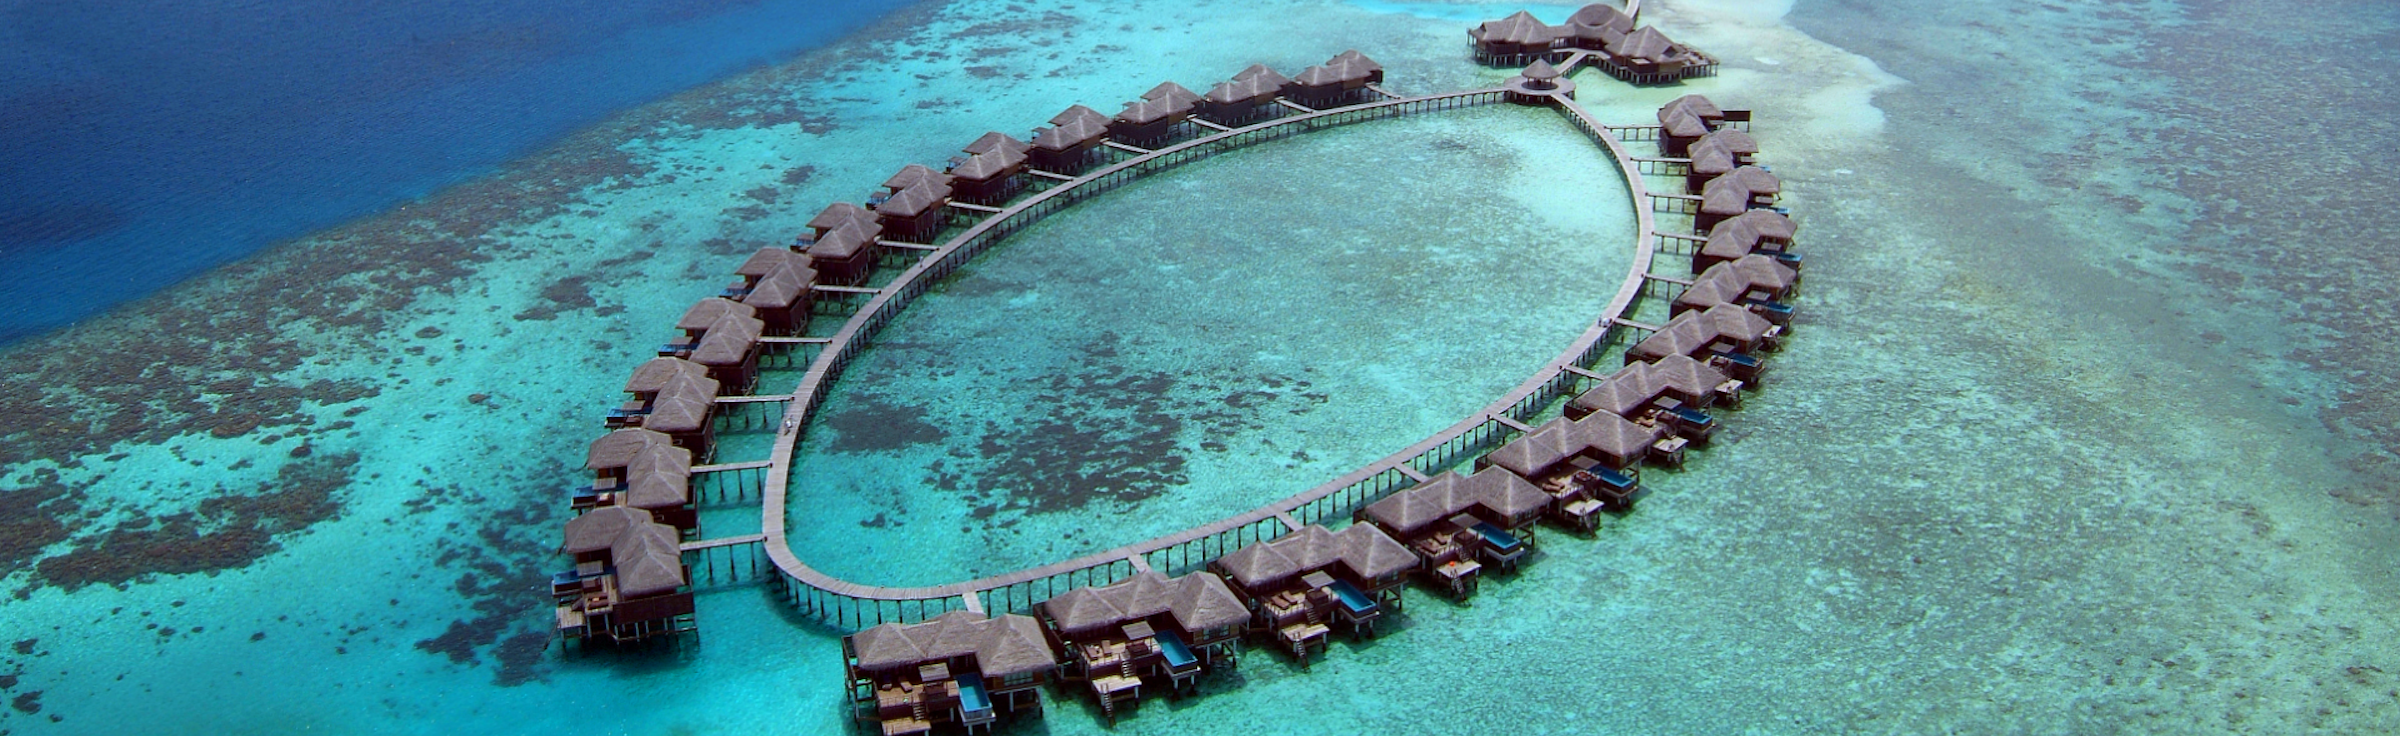 Maldives Budget Vacation